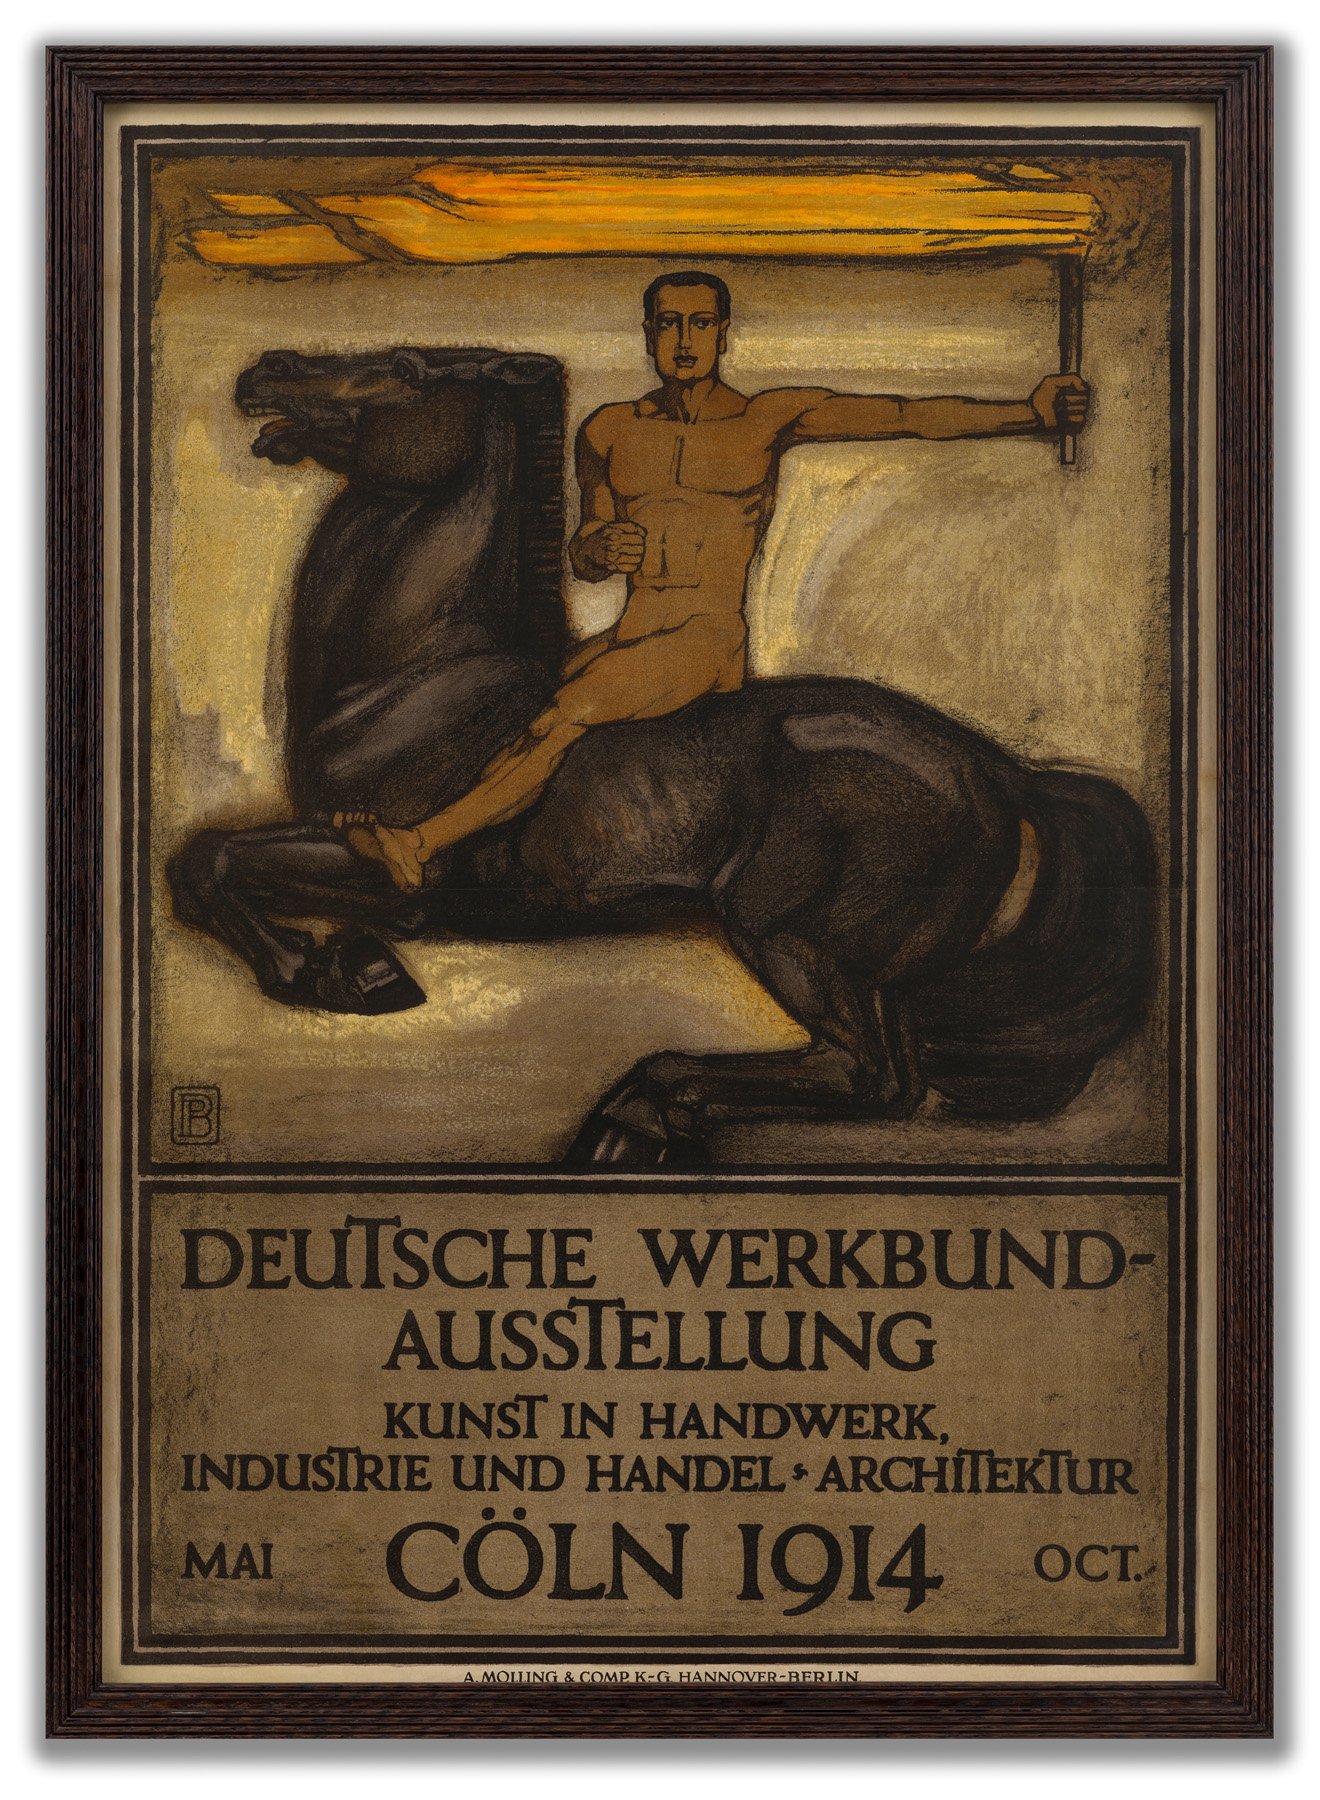 Peter Behrens, (German 1868-1940), Deutsche Werkbund-Ausstellung, 1914